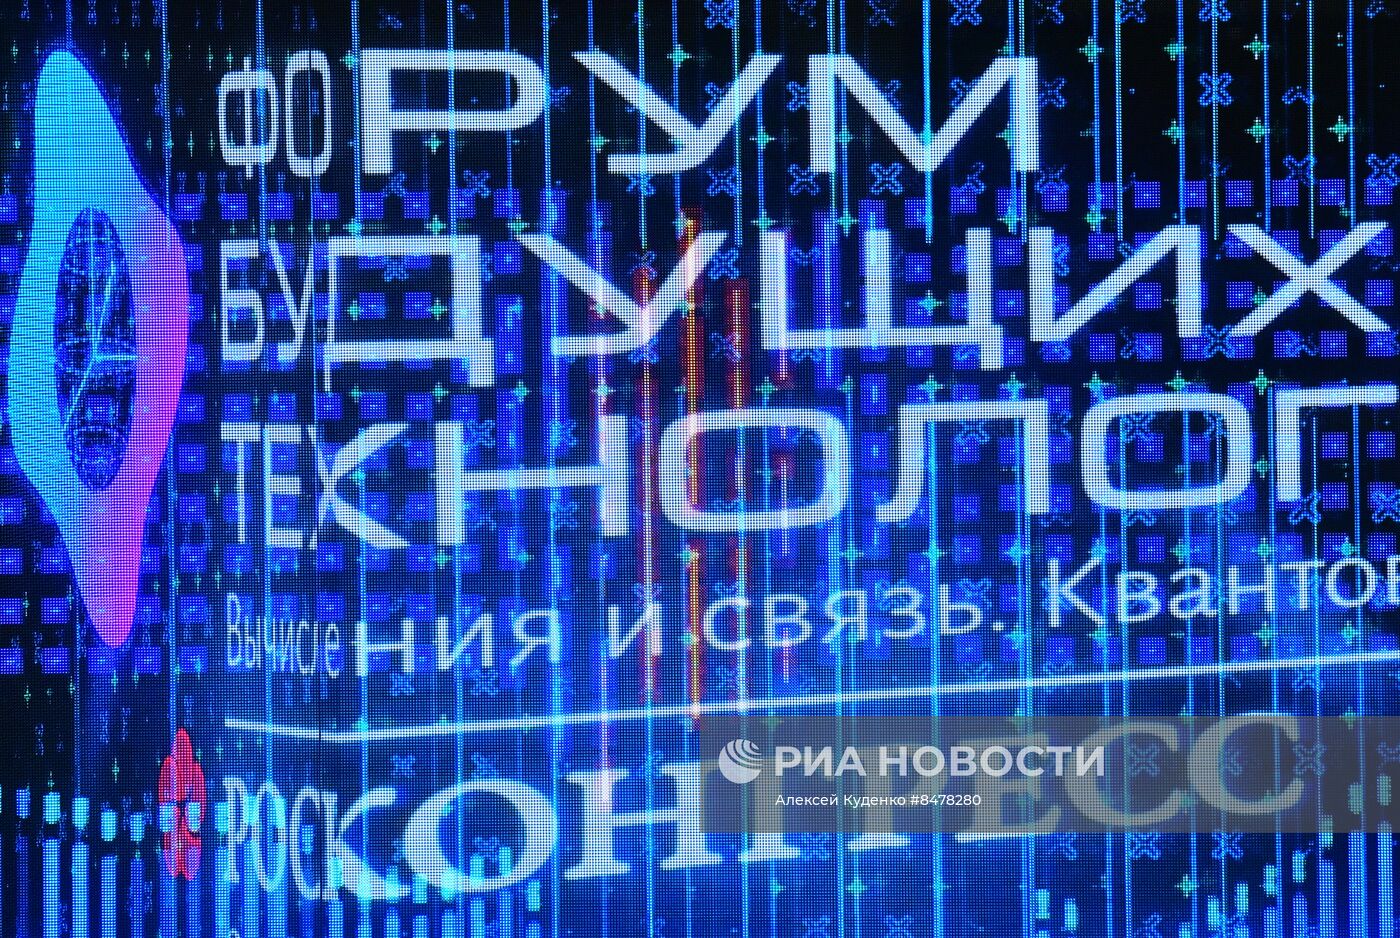 Форум будущих технологий "Вычисления и связь. Квантовый мир" в Москве